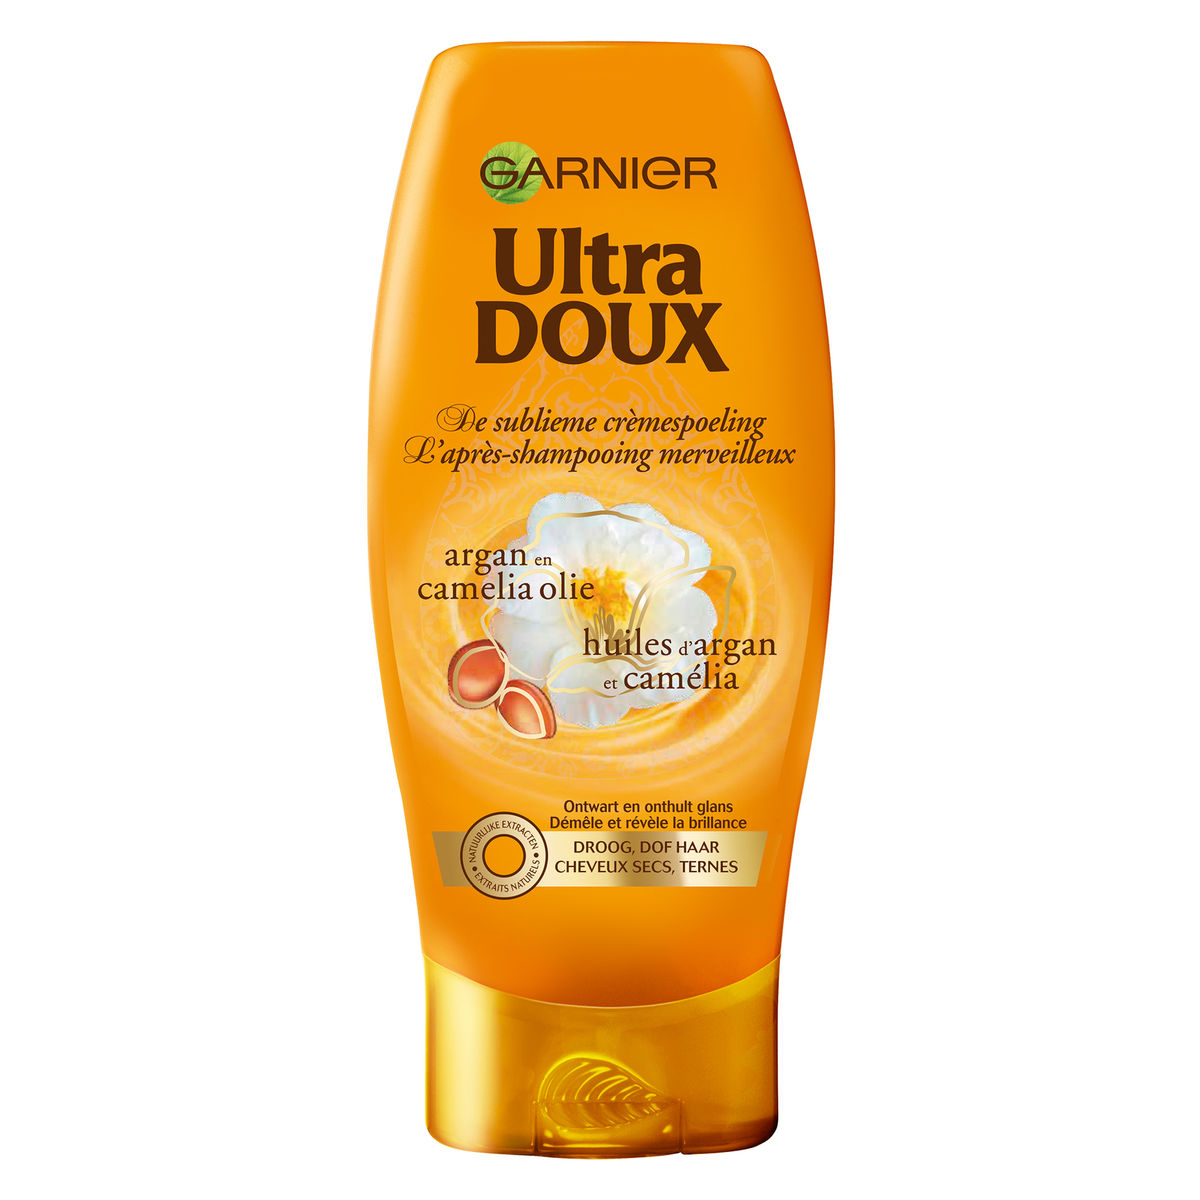 Garnier Ultra Doux Sublieme - Droog of Dof Haar